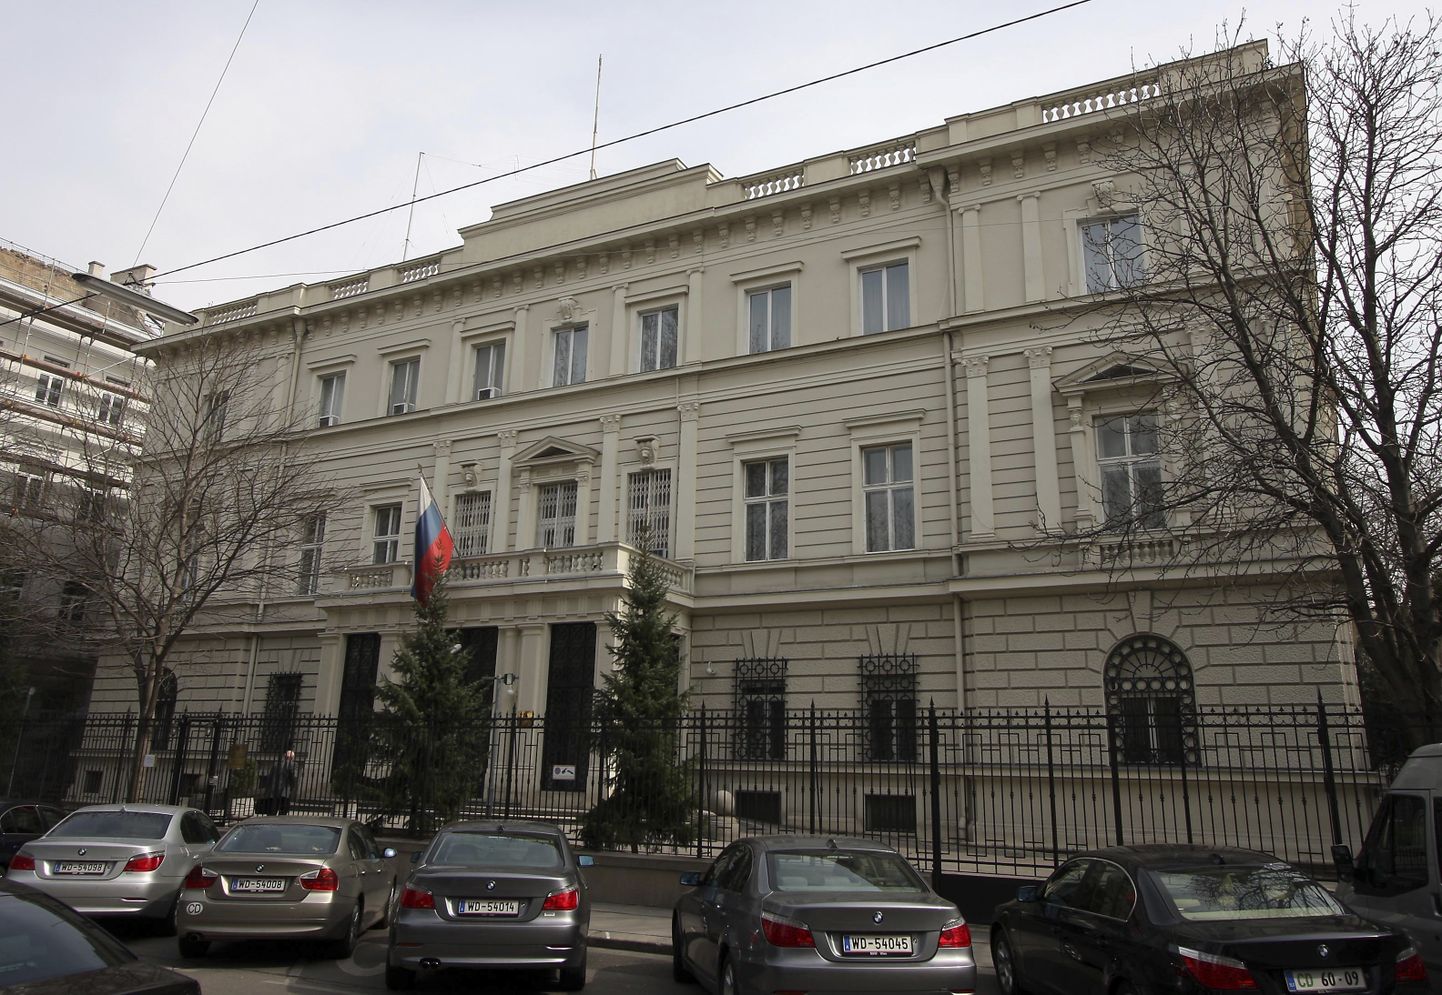 Venemaa saatkond Viinis. Foto on illustratiivne.